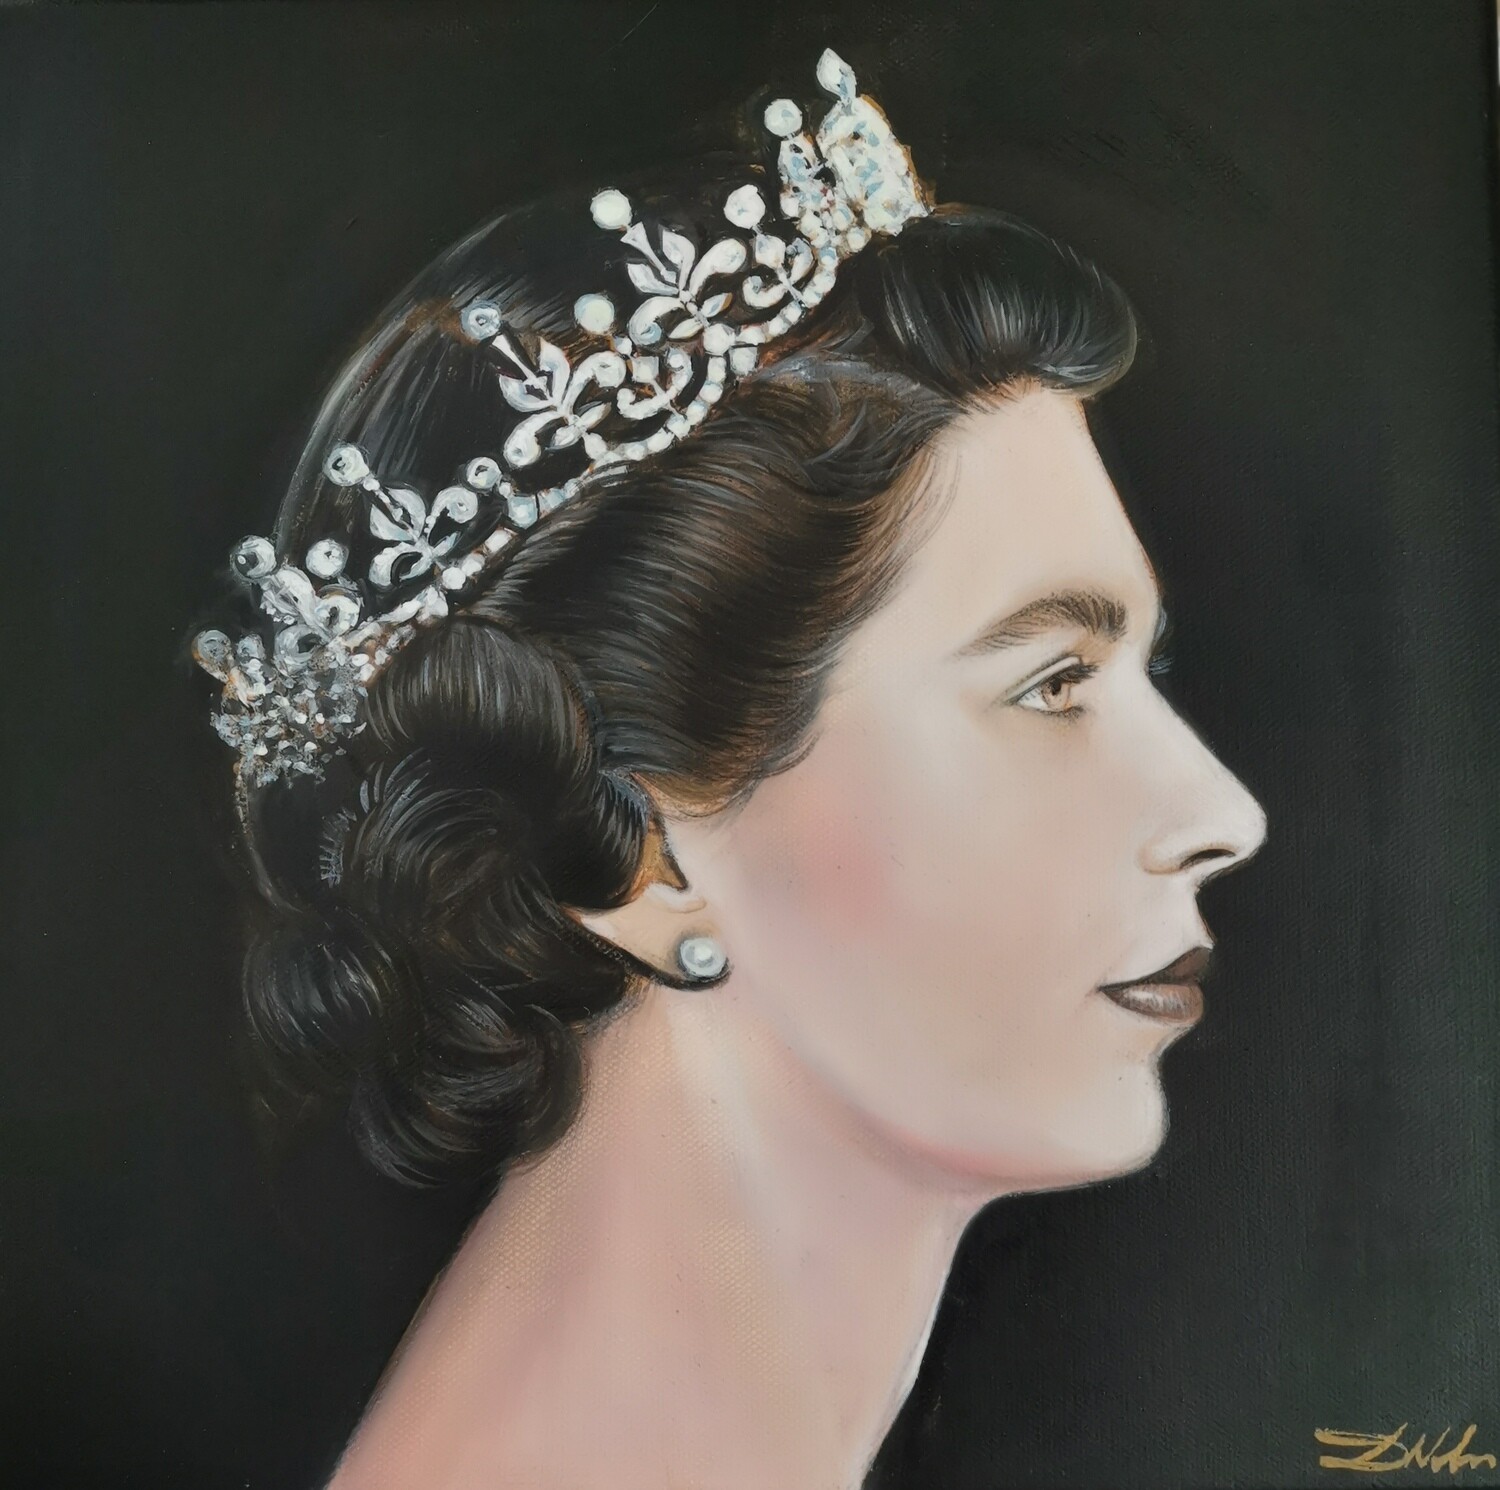 The portrait of the Queen Elizabeth II